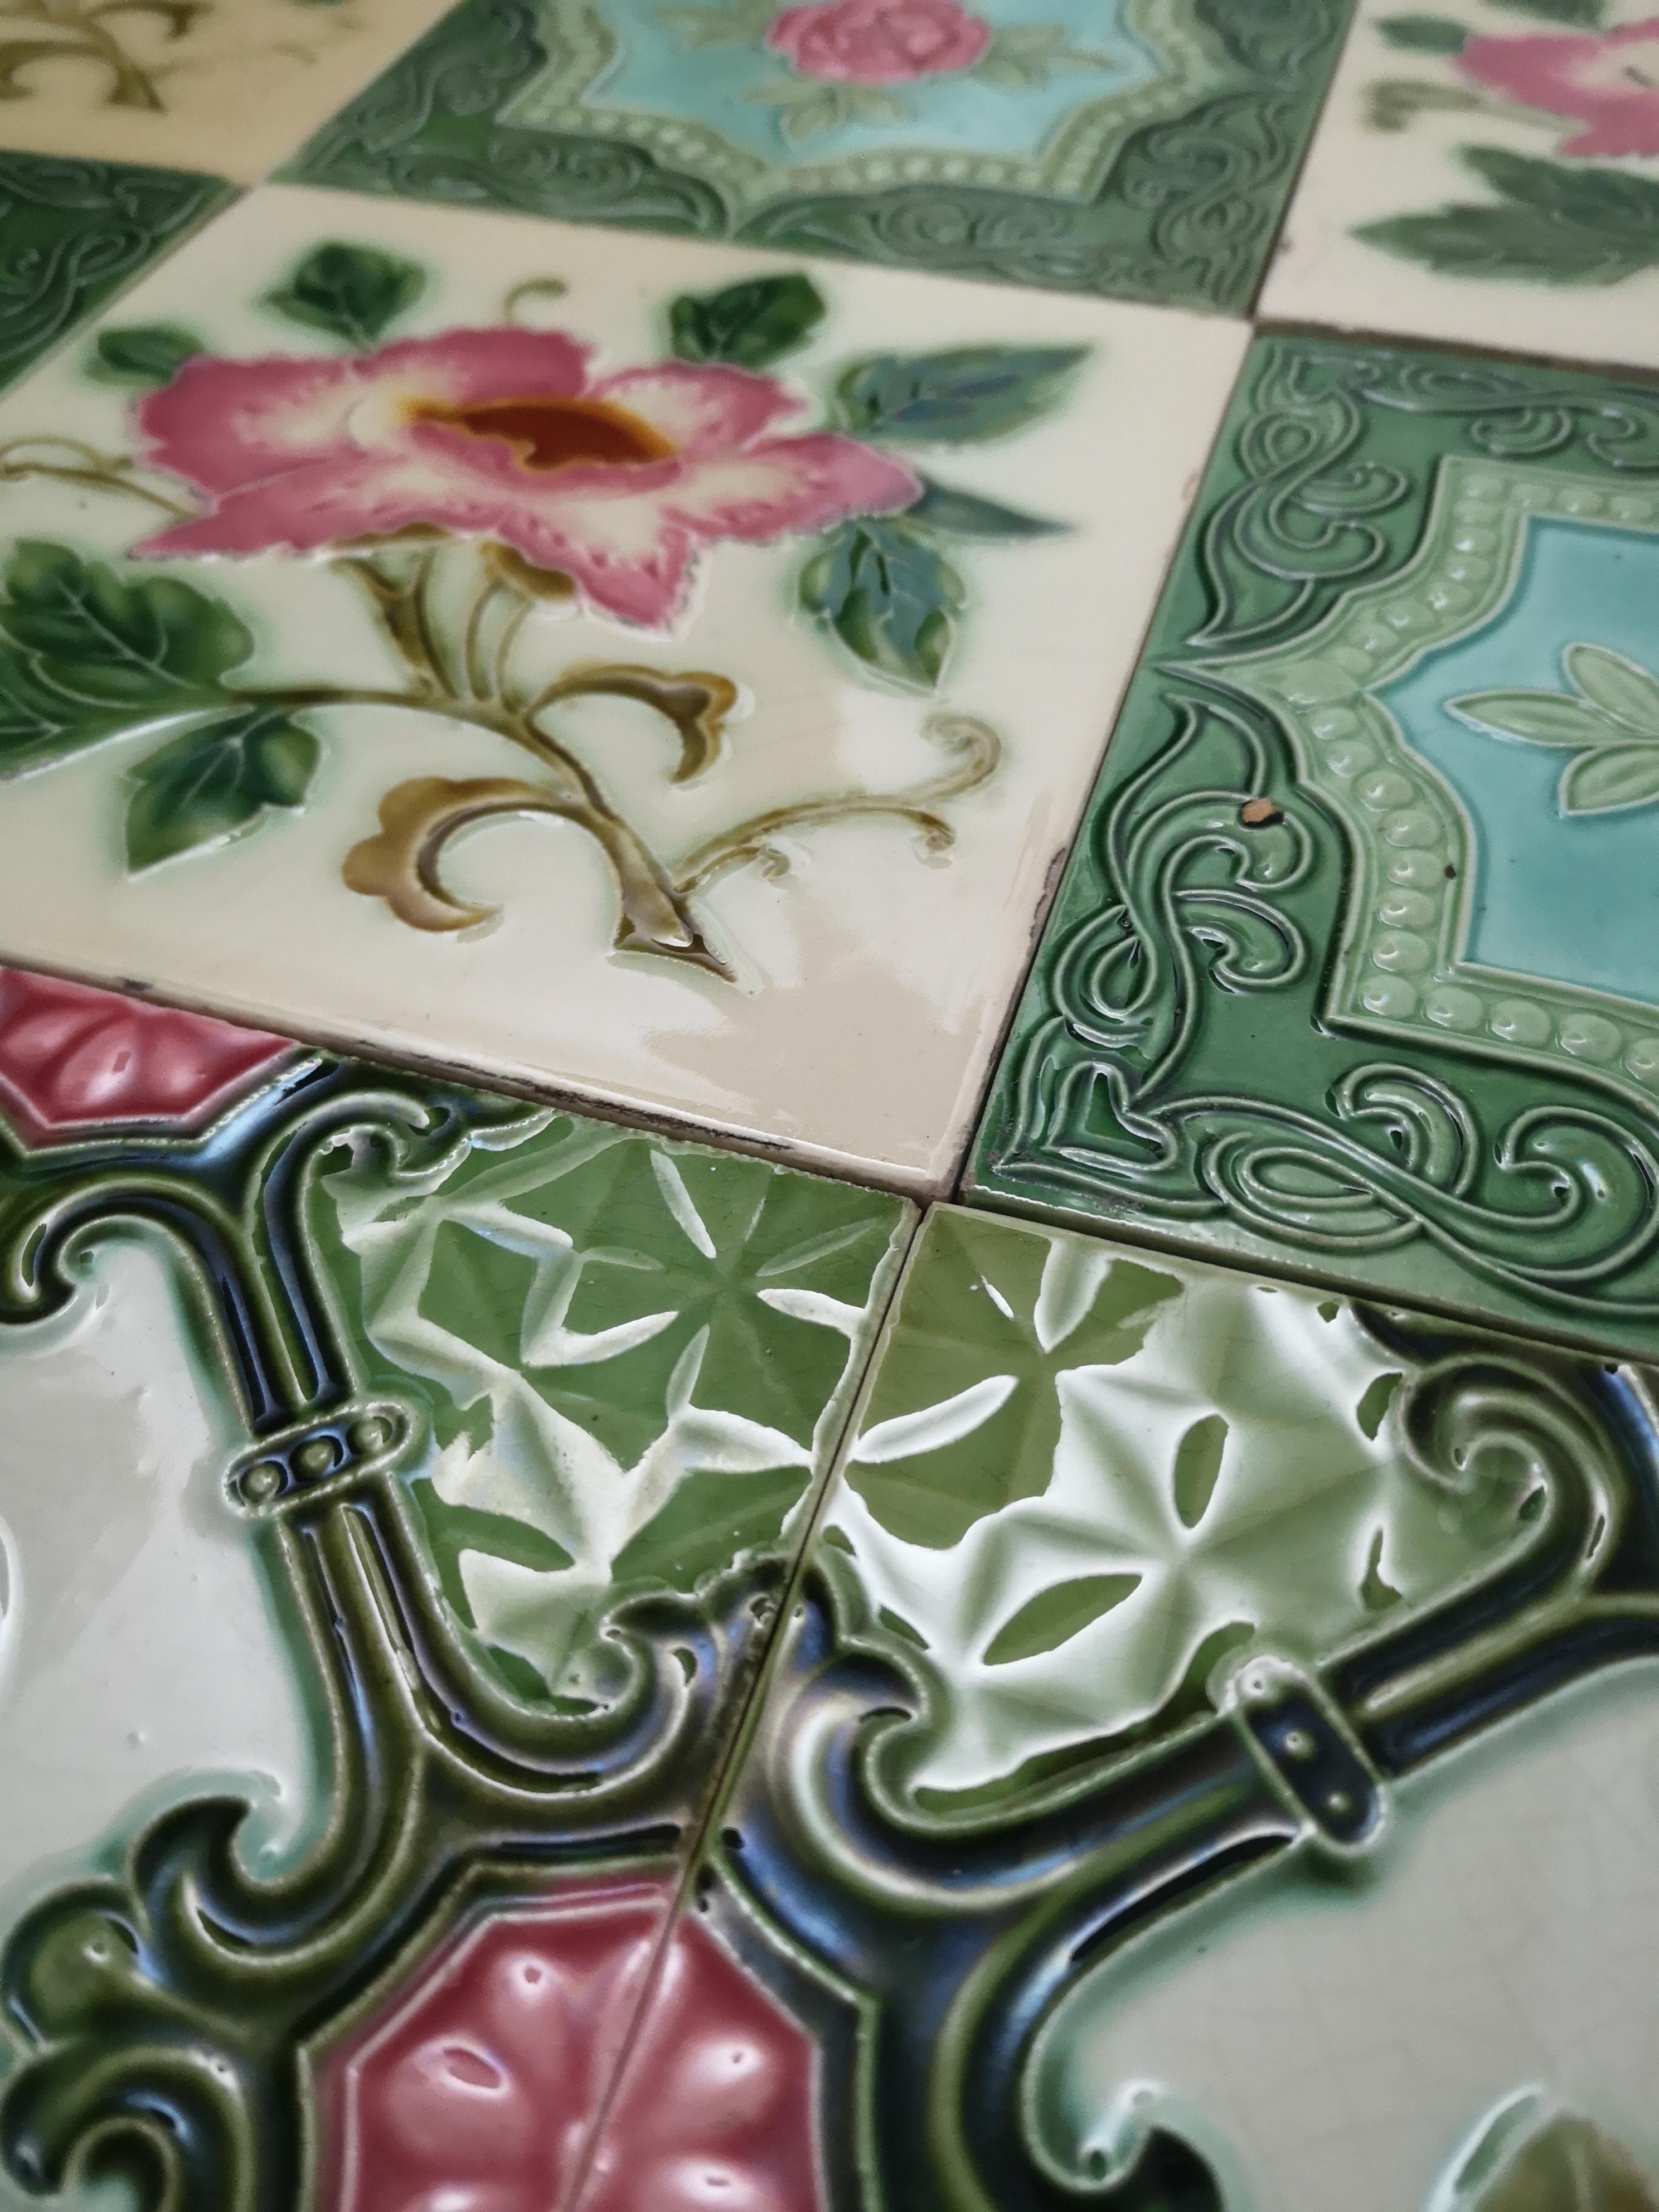 Belgian Mix of 25 Glazed Relief Tiles By S.A. Produits Ceramiques de la Dyle, 1930s